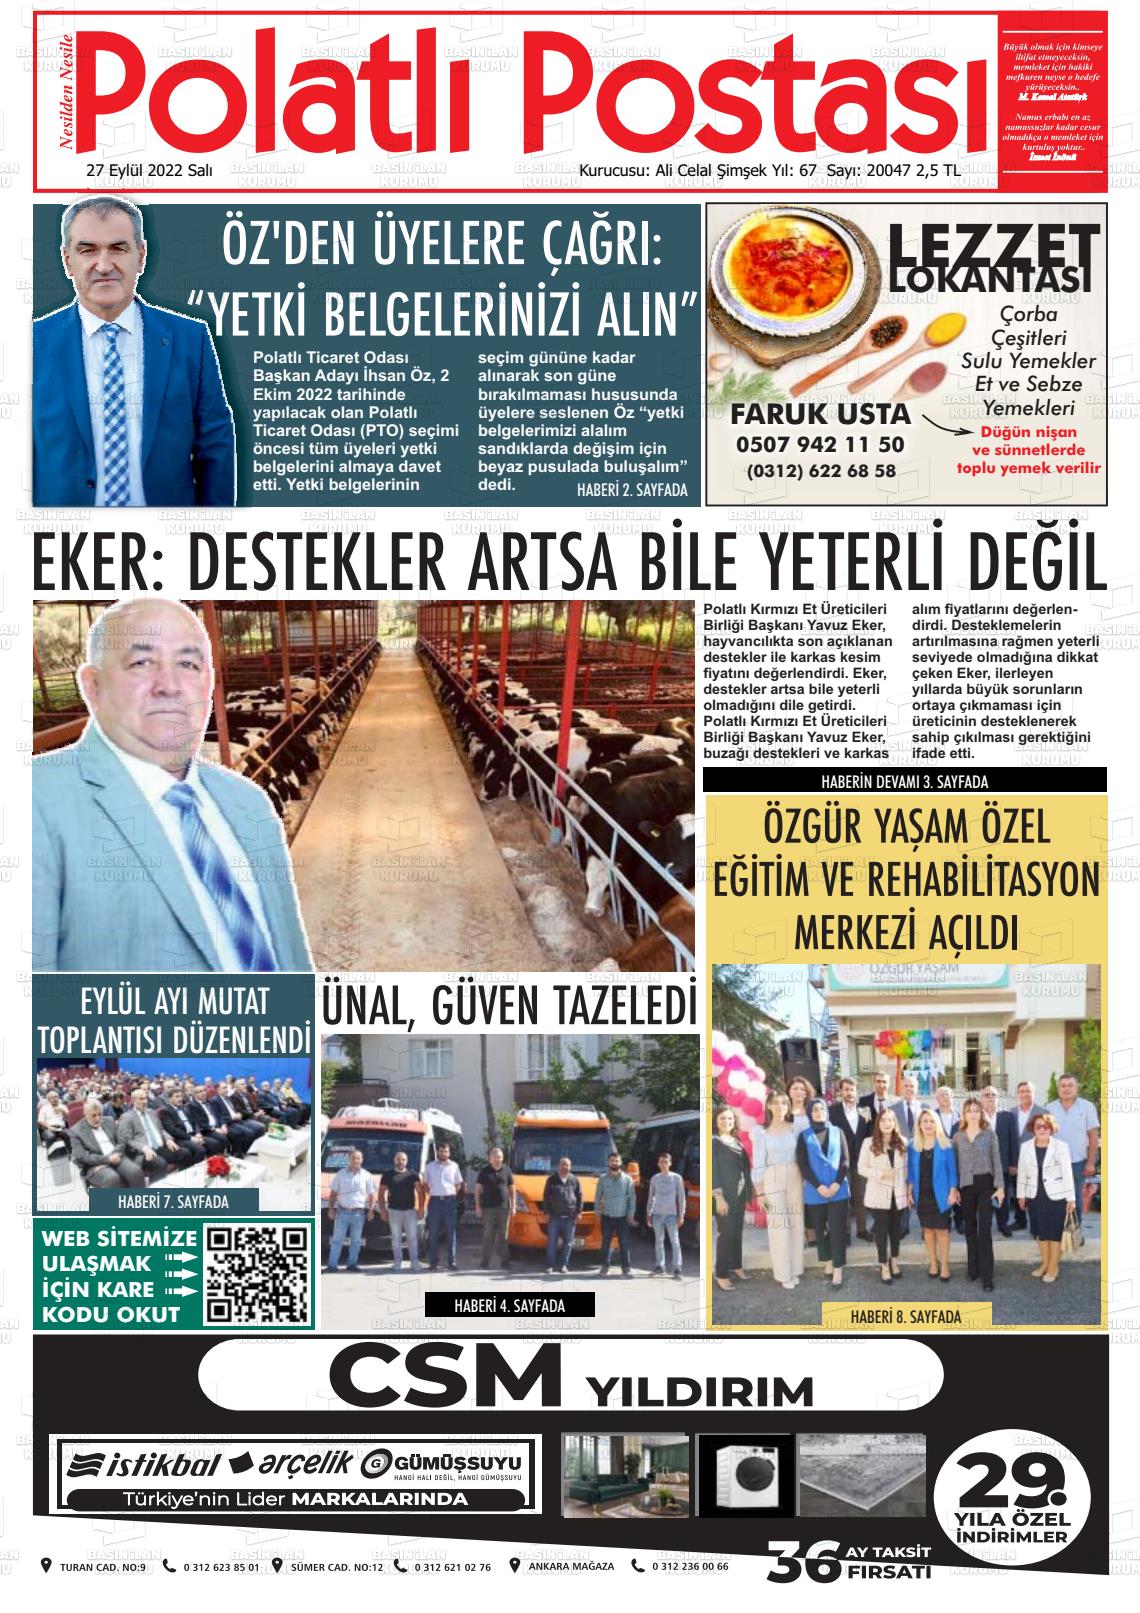 27 Eylül 2022 Polatlı Postası Gazete Manşeti